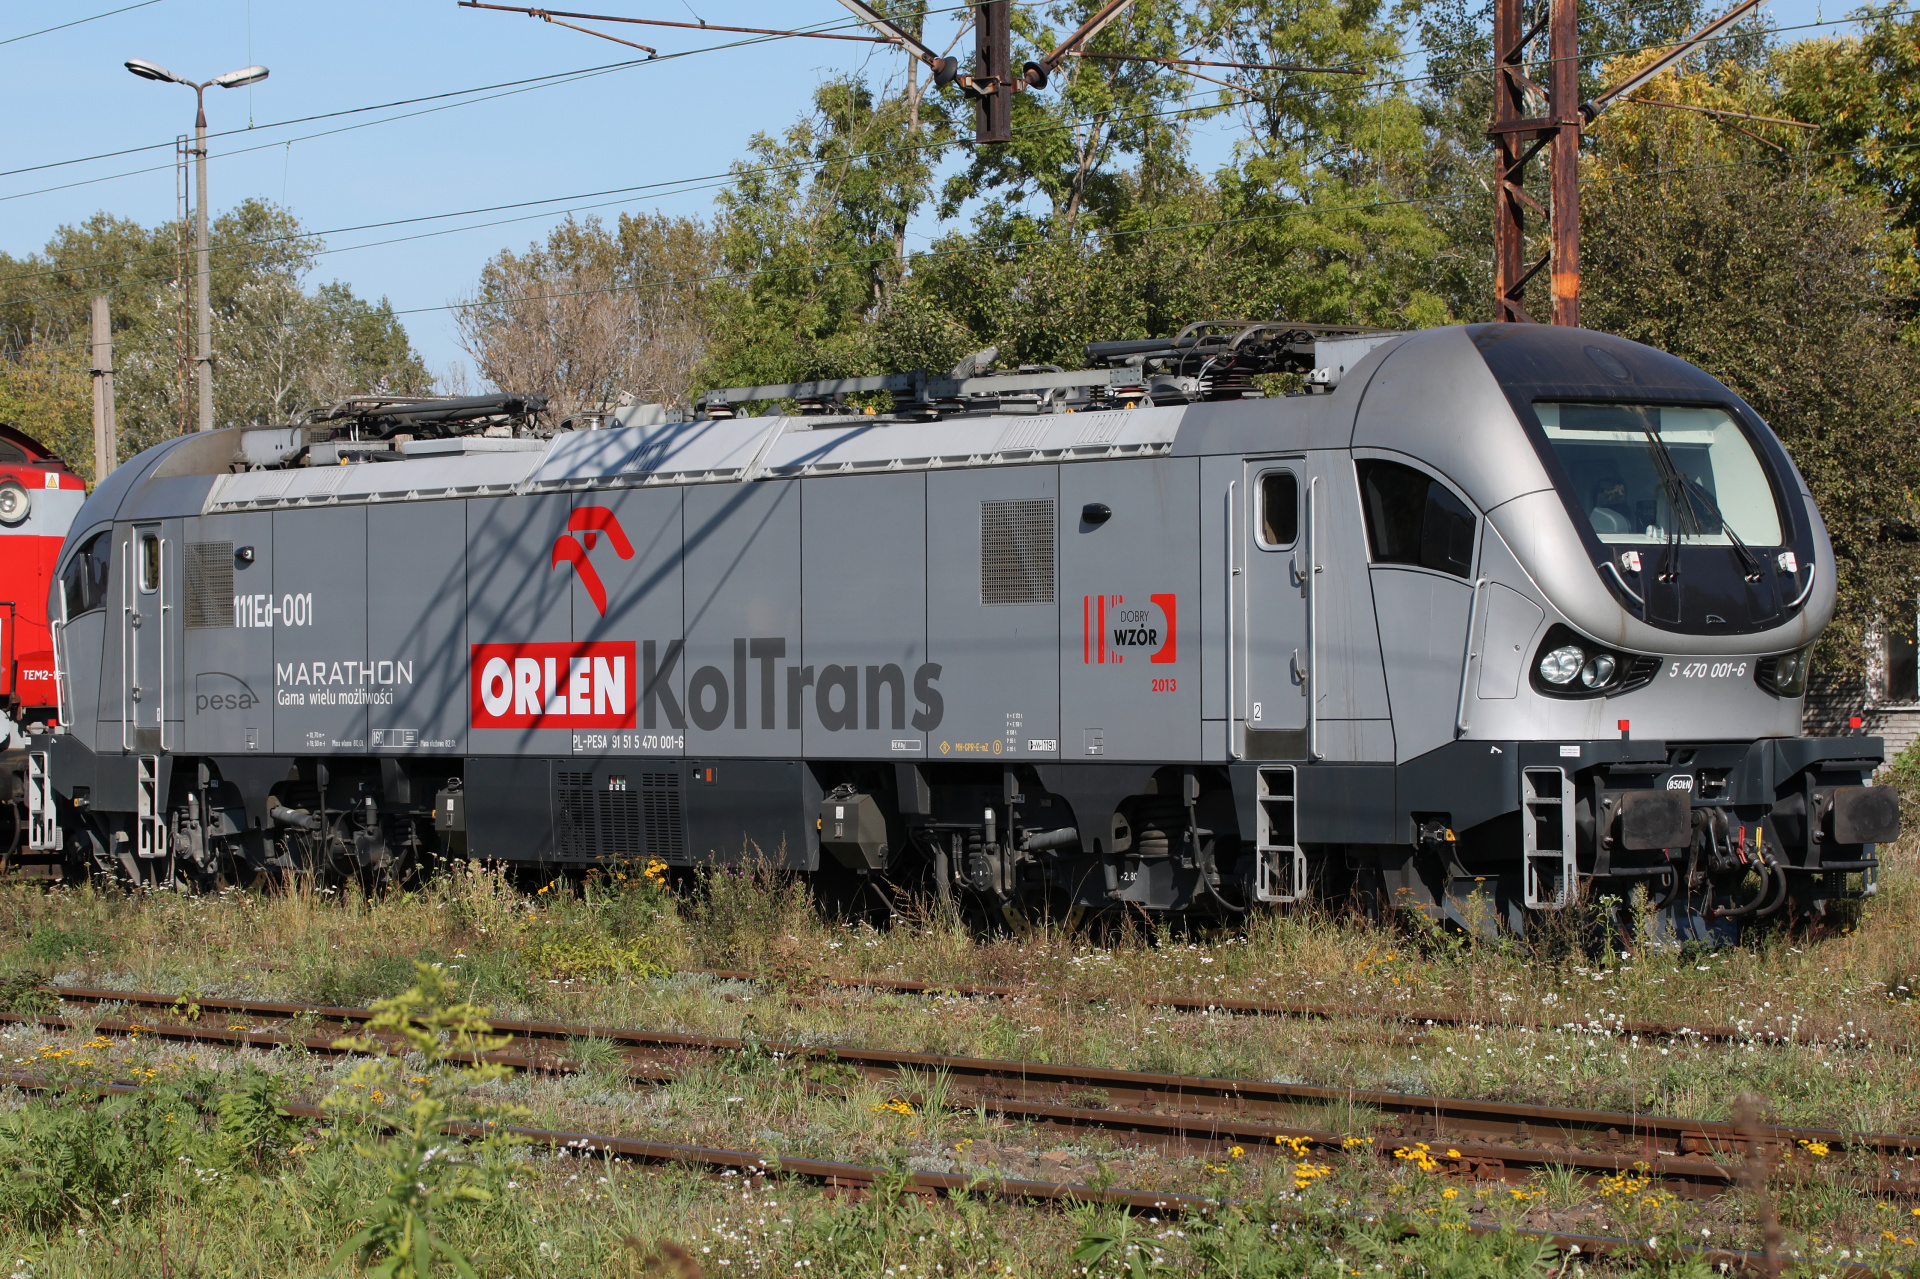 111Ed-001 Marathon (Vehicles » Trains and Locomotives » Pesa Gama)